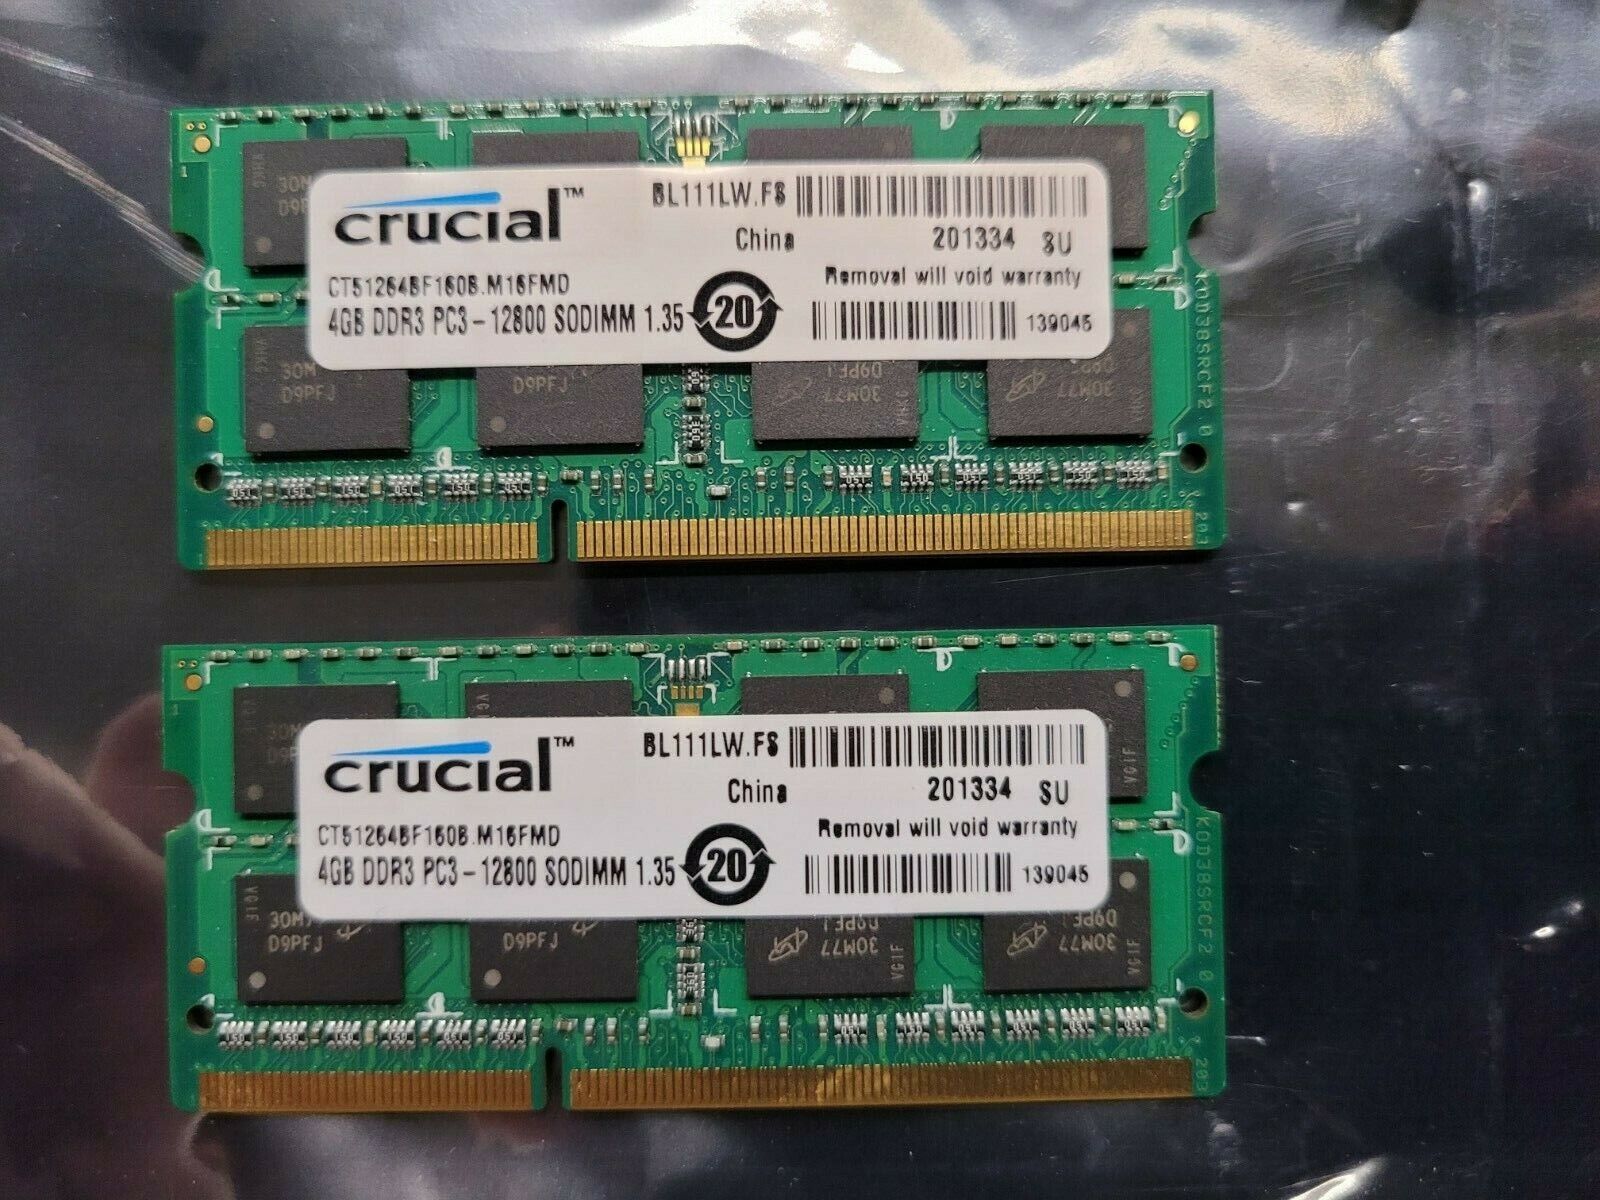 Crucial CT51264BF160B.M15FMD 8GB (2 * 4GB) DDR3 PC3-12800 1.35v SODIMM